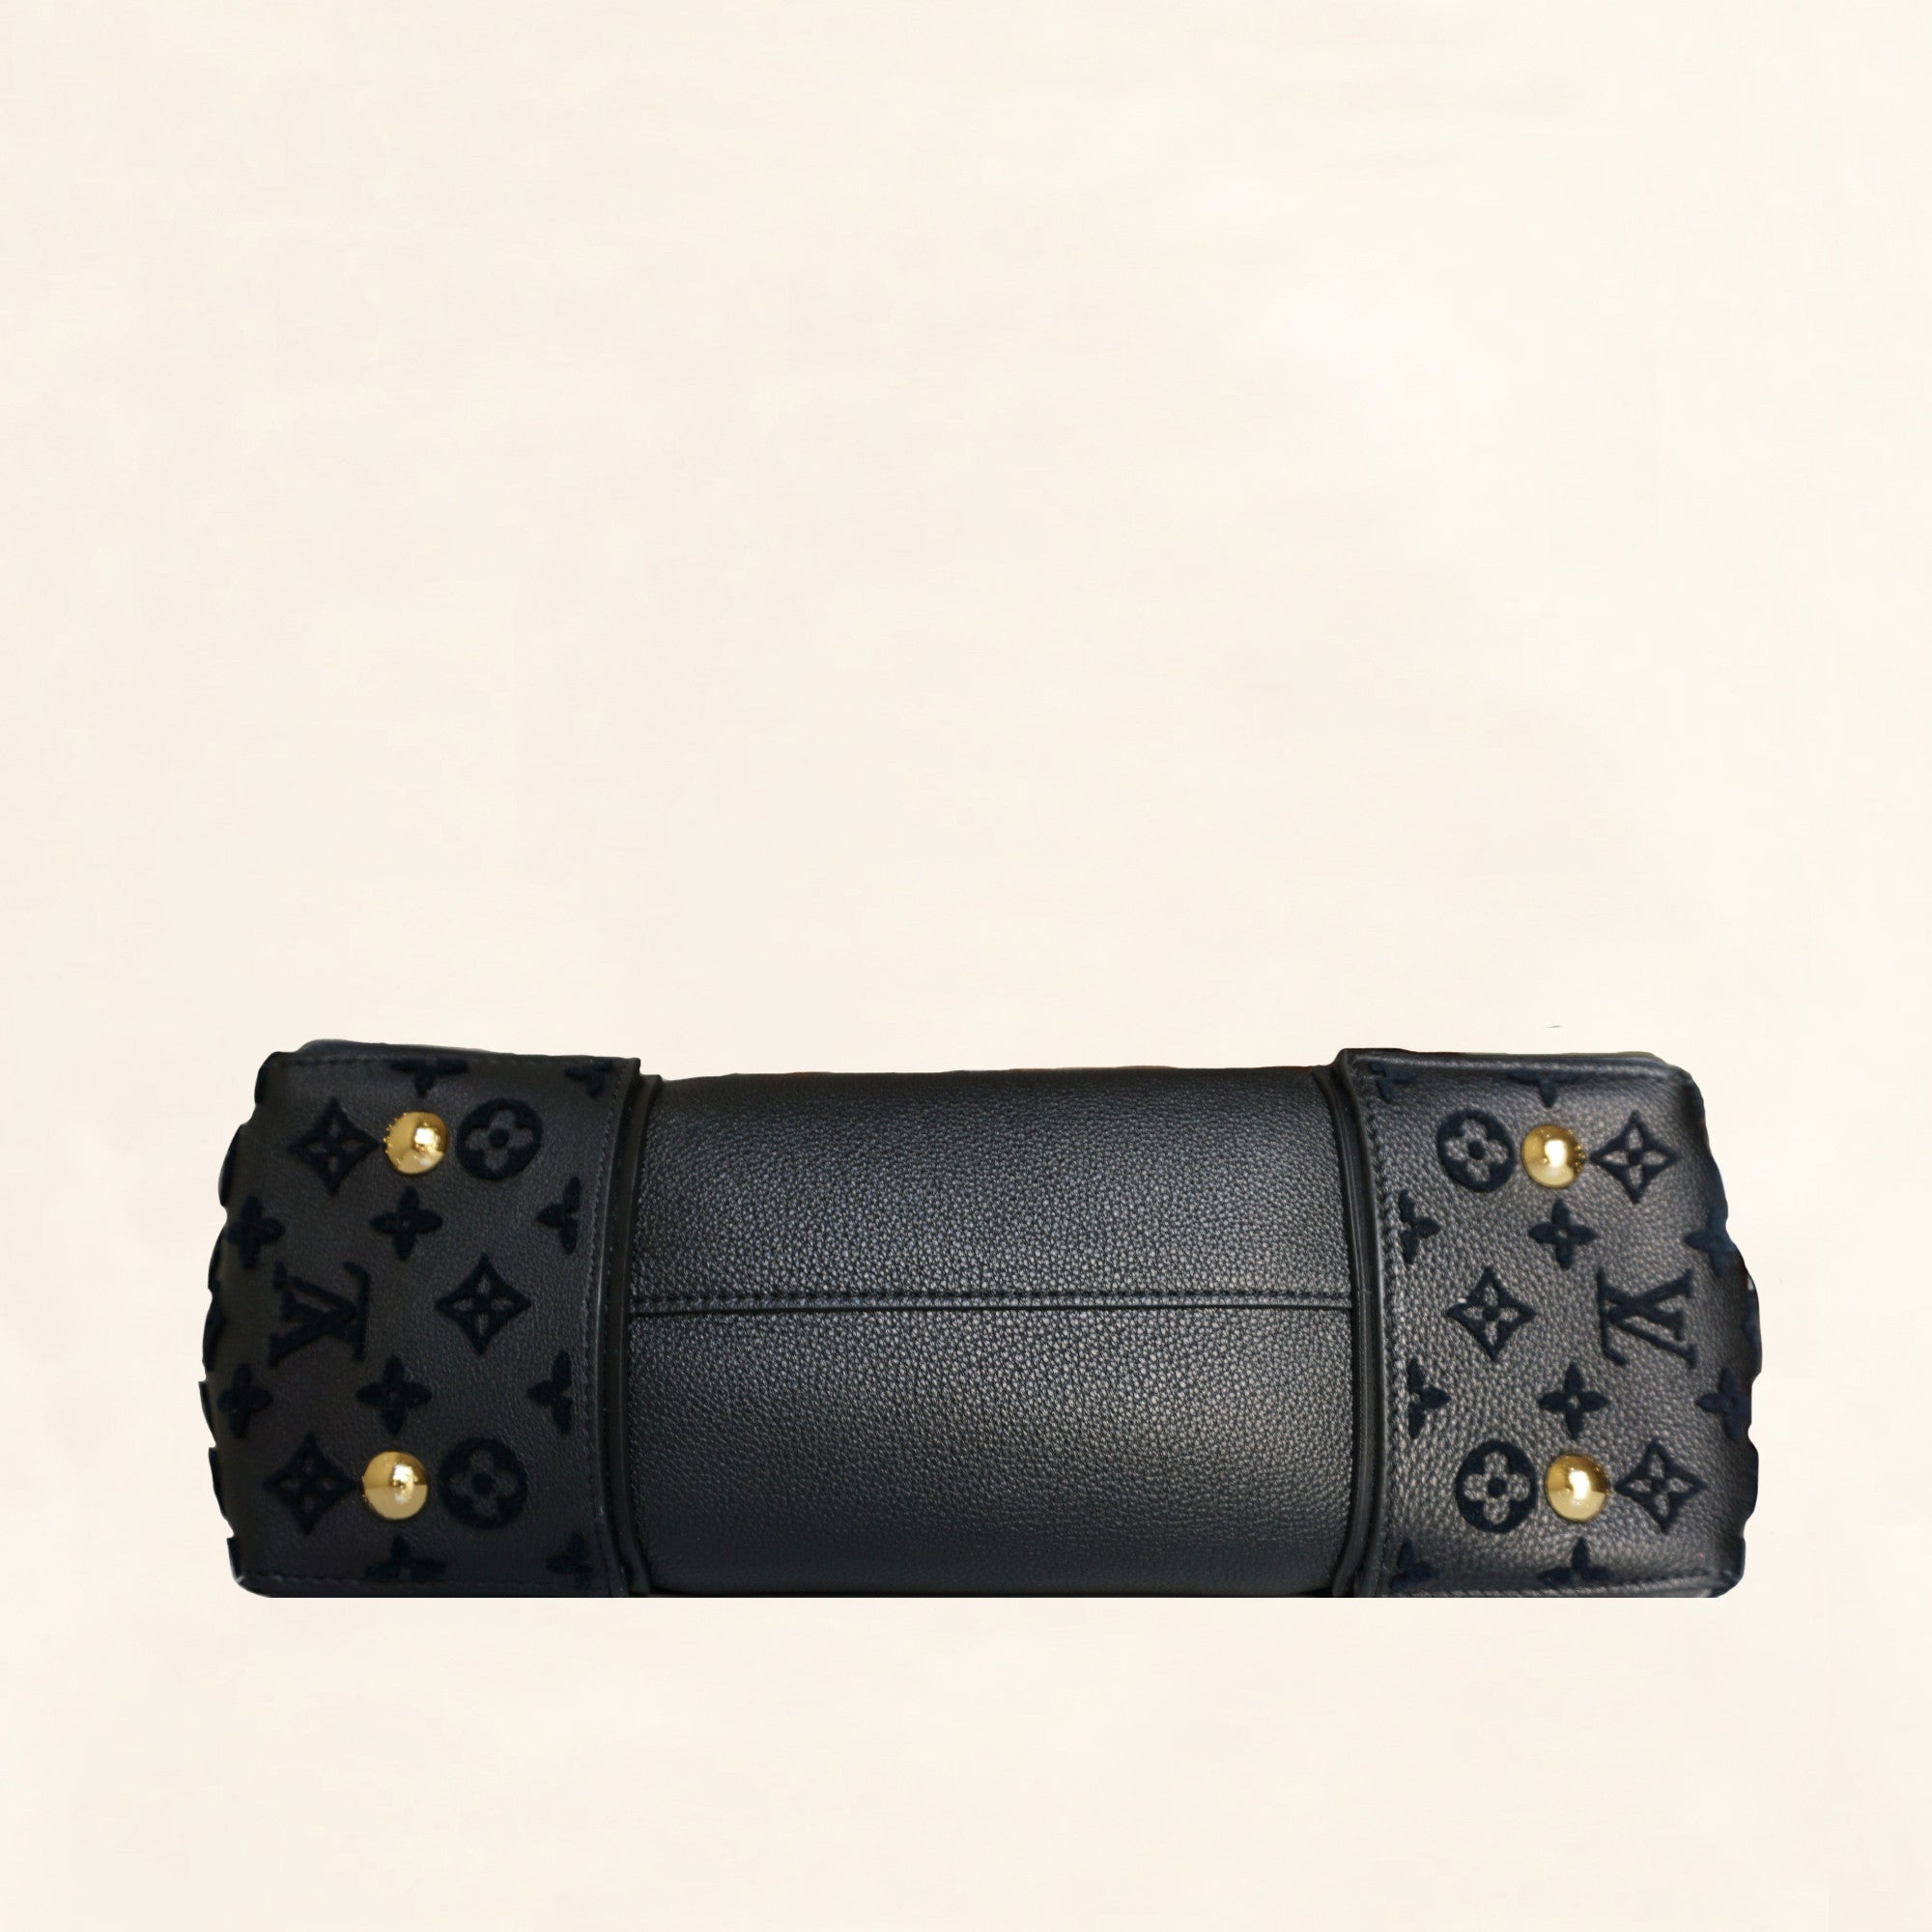 Louis Vuitton Veau Cachemire W PM - Brown Totes, Handbags